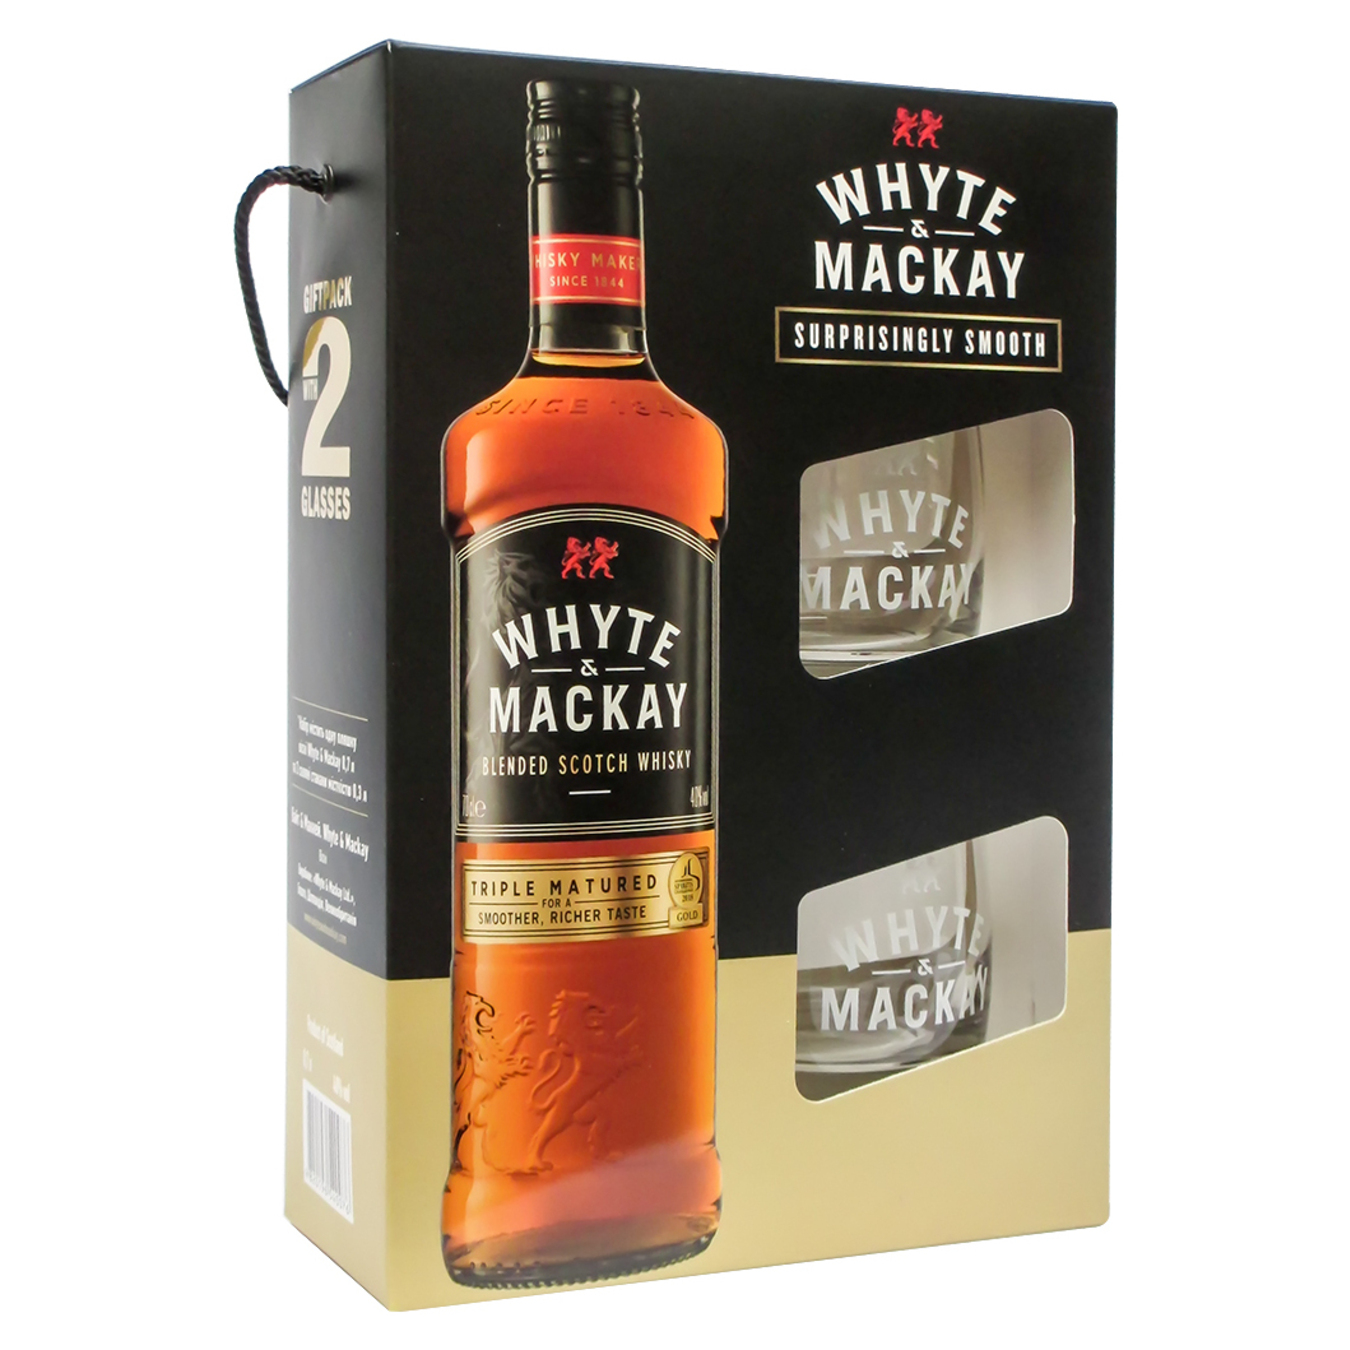 Whyte&Mackay 40% whiskey set 0.7l + 2 glasses